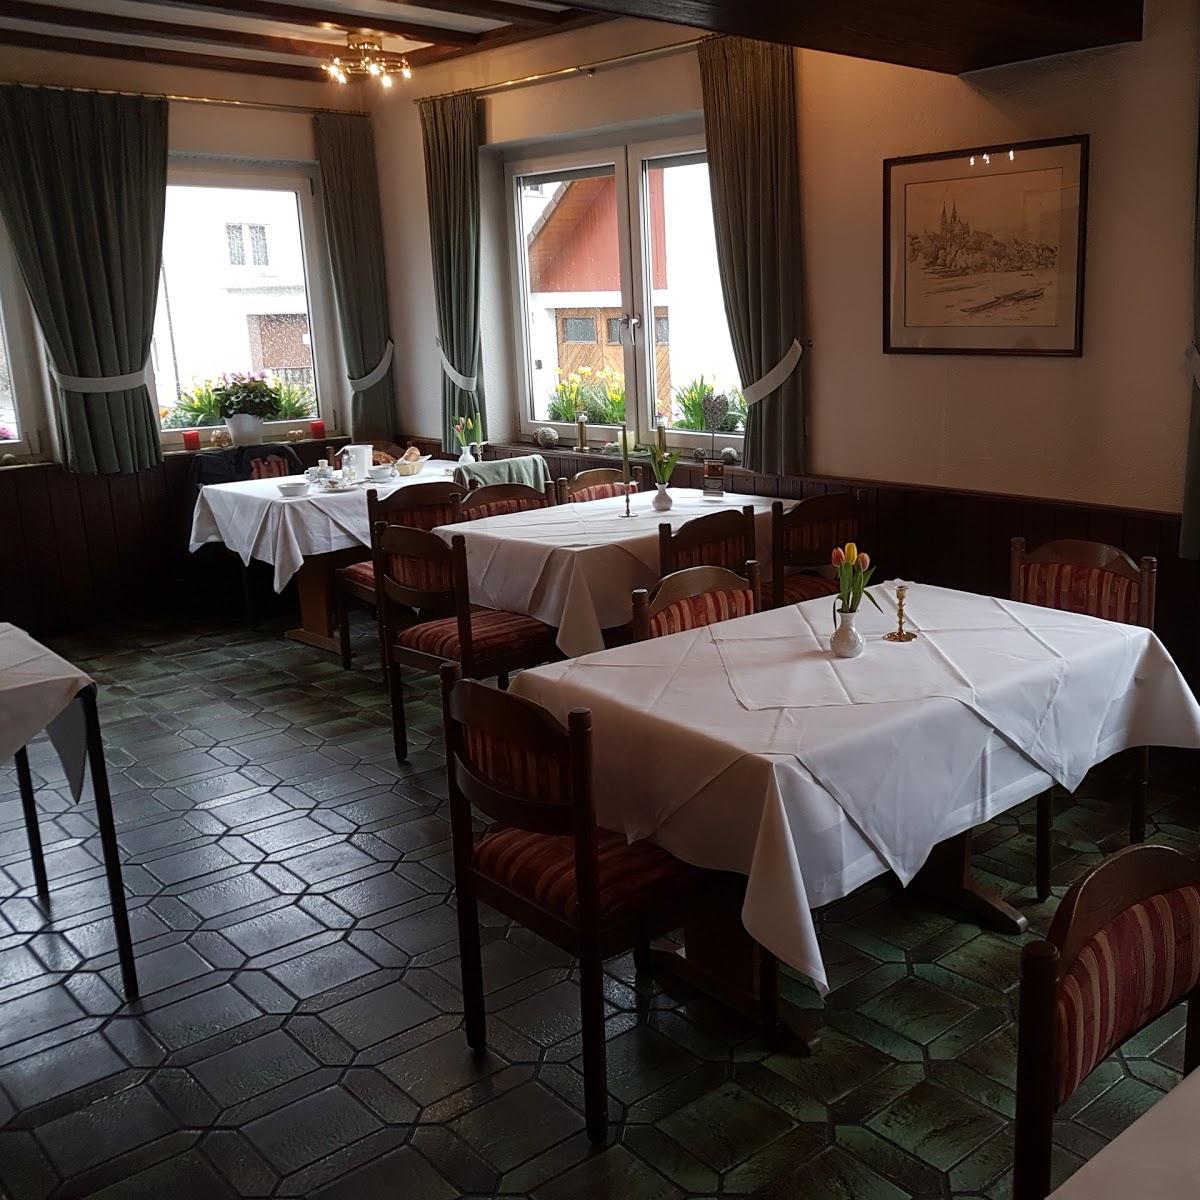 Restaurant "Gasthof Linde Griechisches Spezialitäten" in Rheinfelden (Baden)